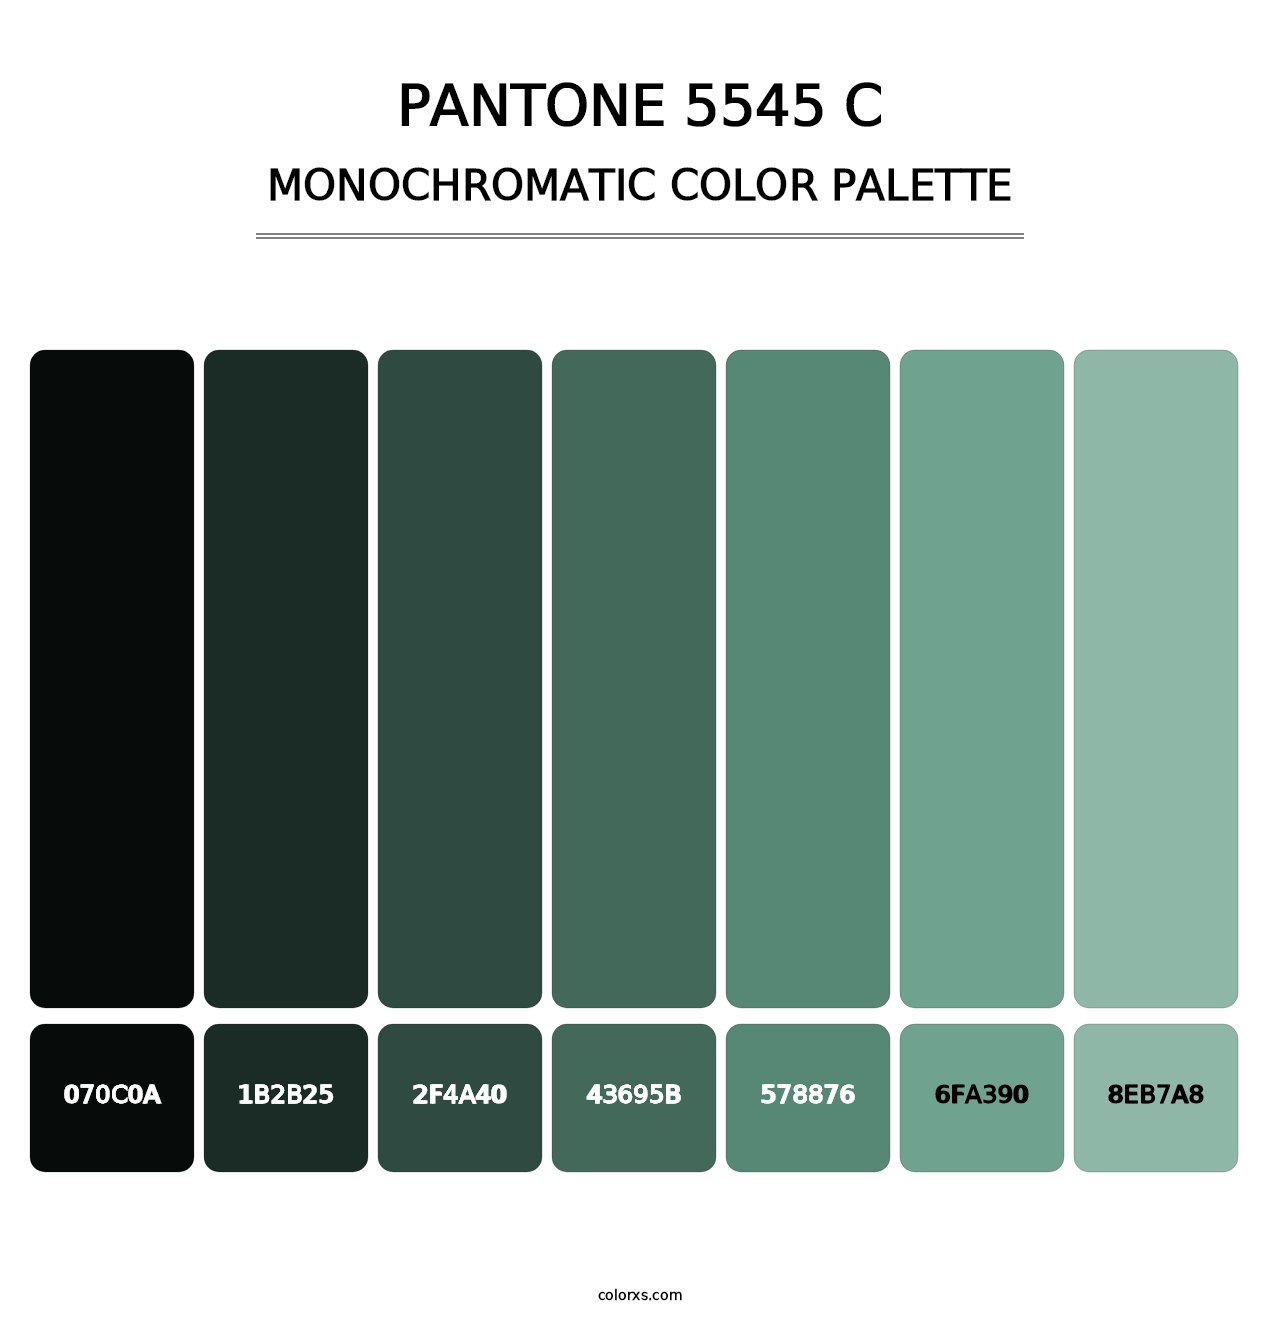 PANTONE 5545 C - Monochromatic Color Palette